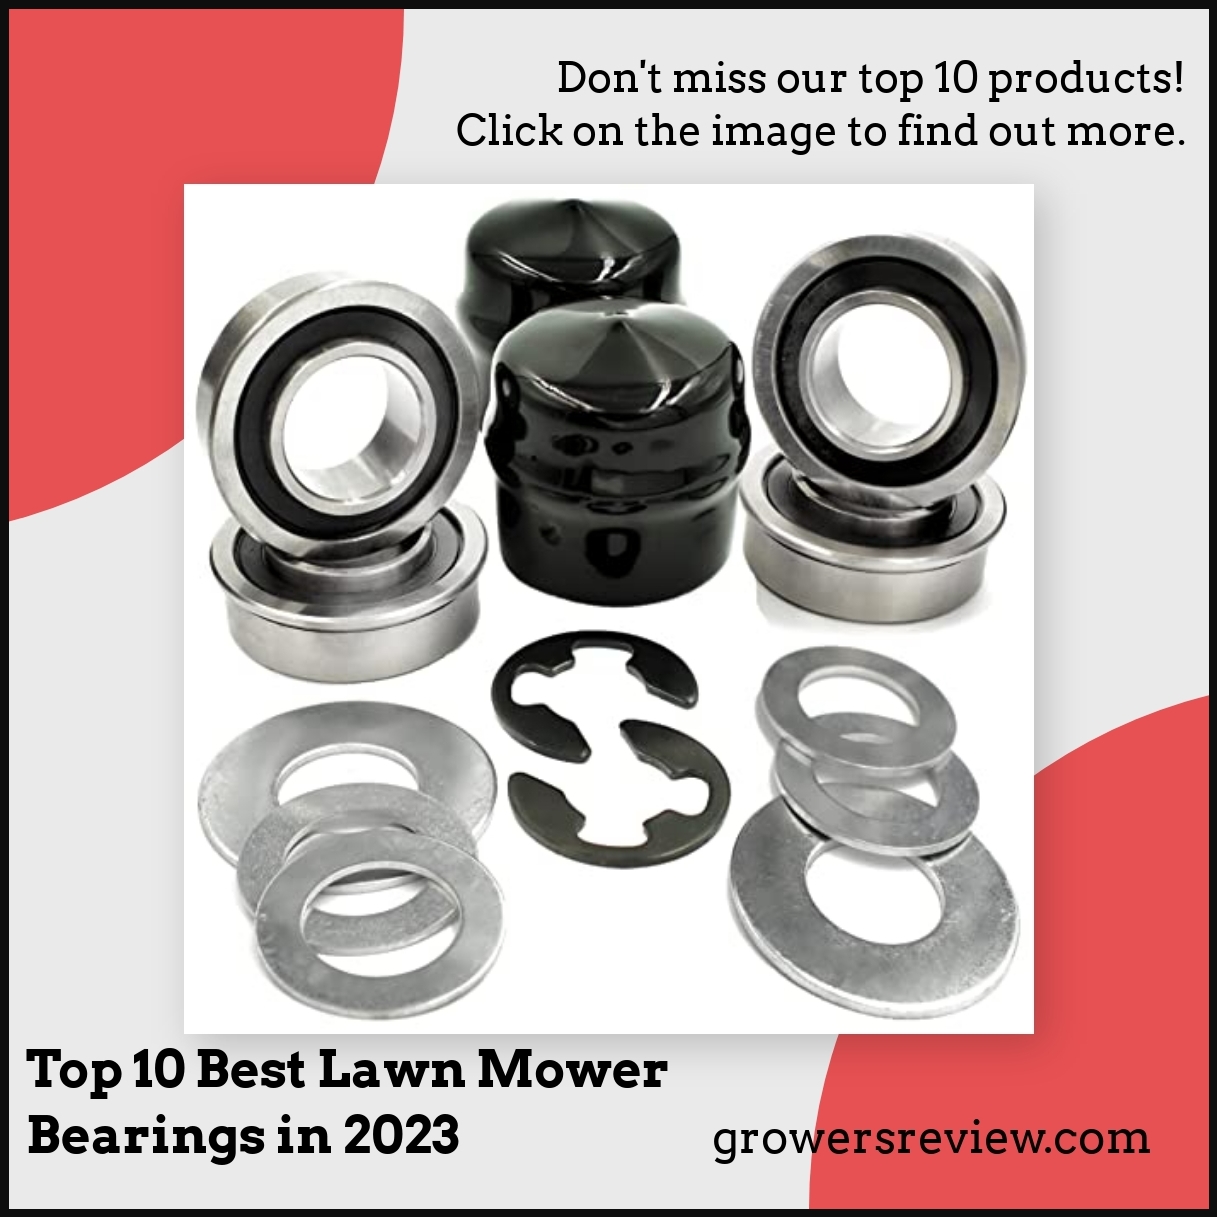 Top 10 Best Lawn Mower Bearings in 2023